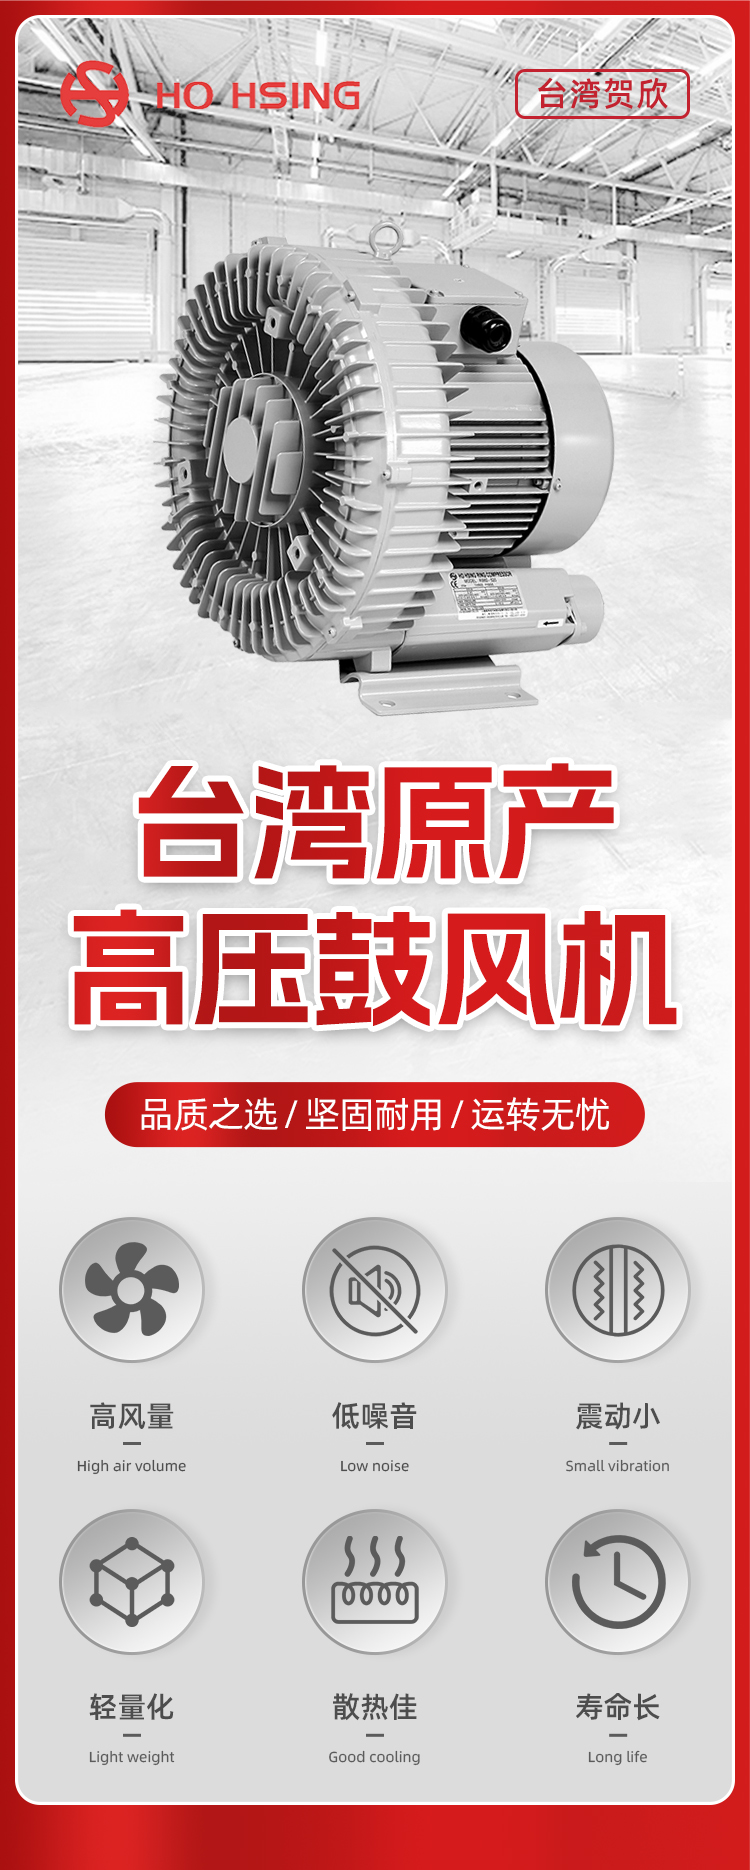 低噪音鼓风机RB50-520 高压鼓风机 台湾原产台湾Ho Hsing贺欣吹吸两用示例图1